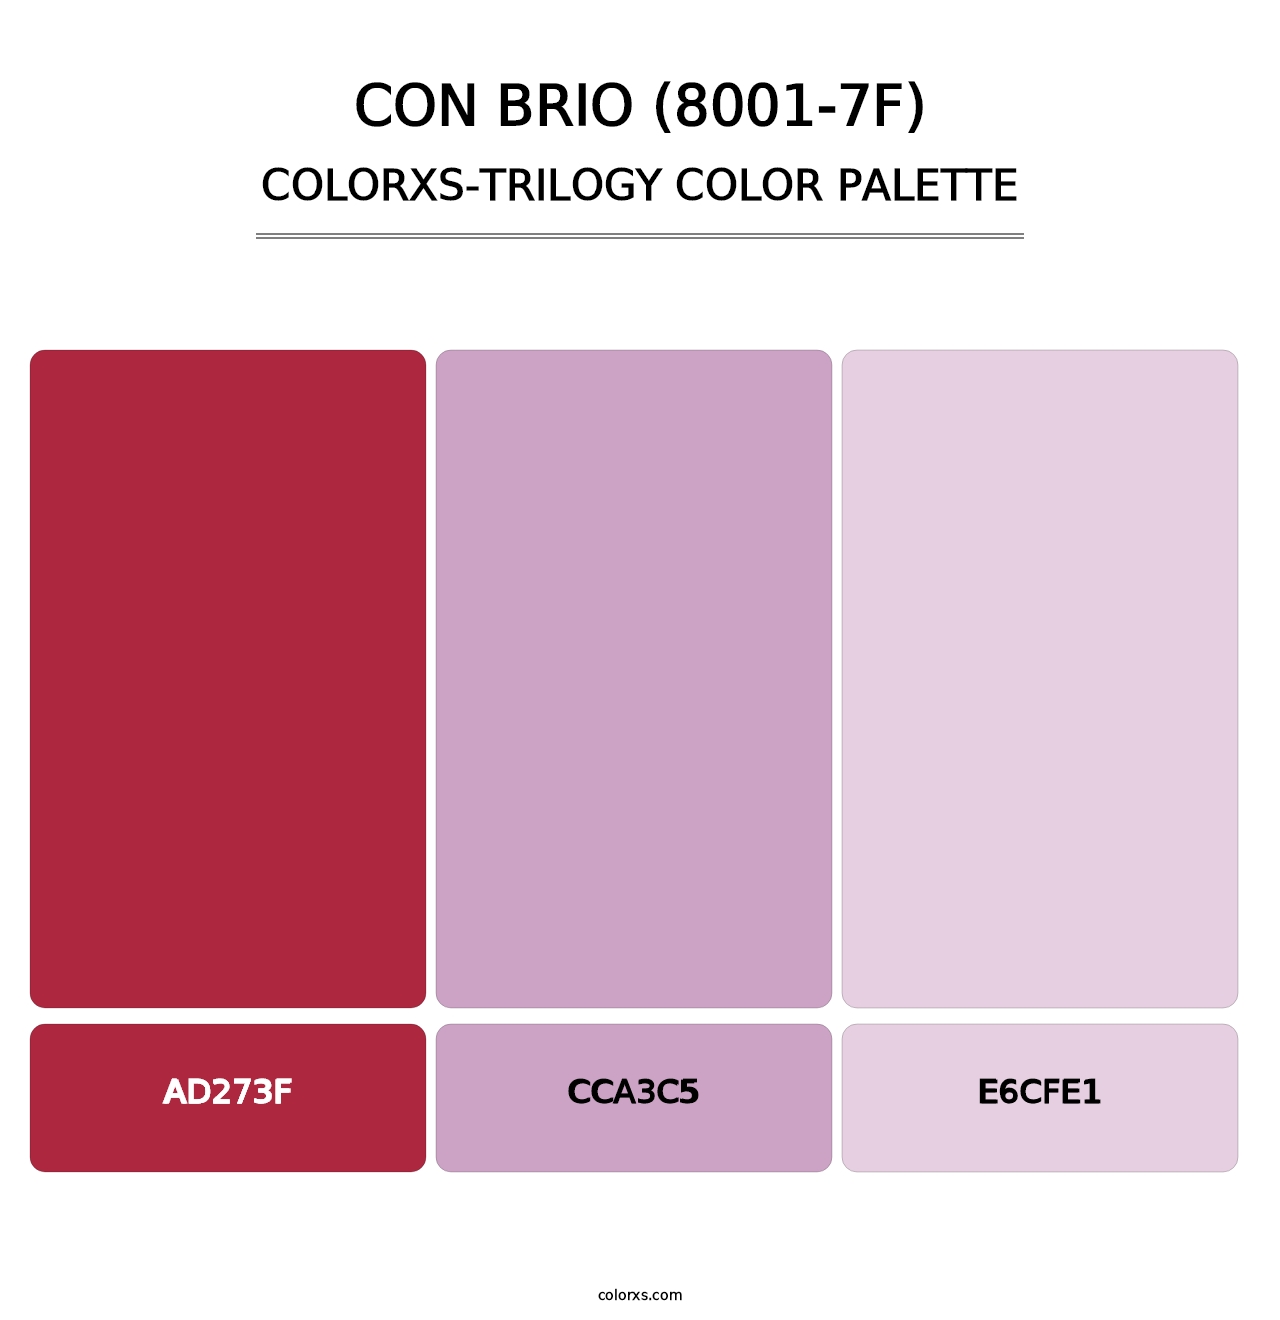 Con Brio (8001-7F) - Colorxs Trilogy Palette